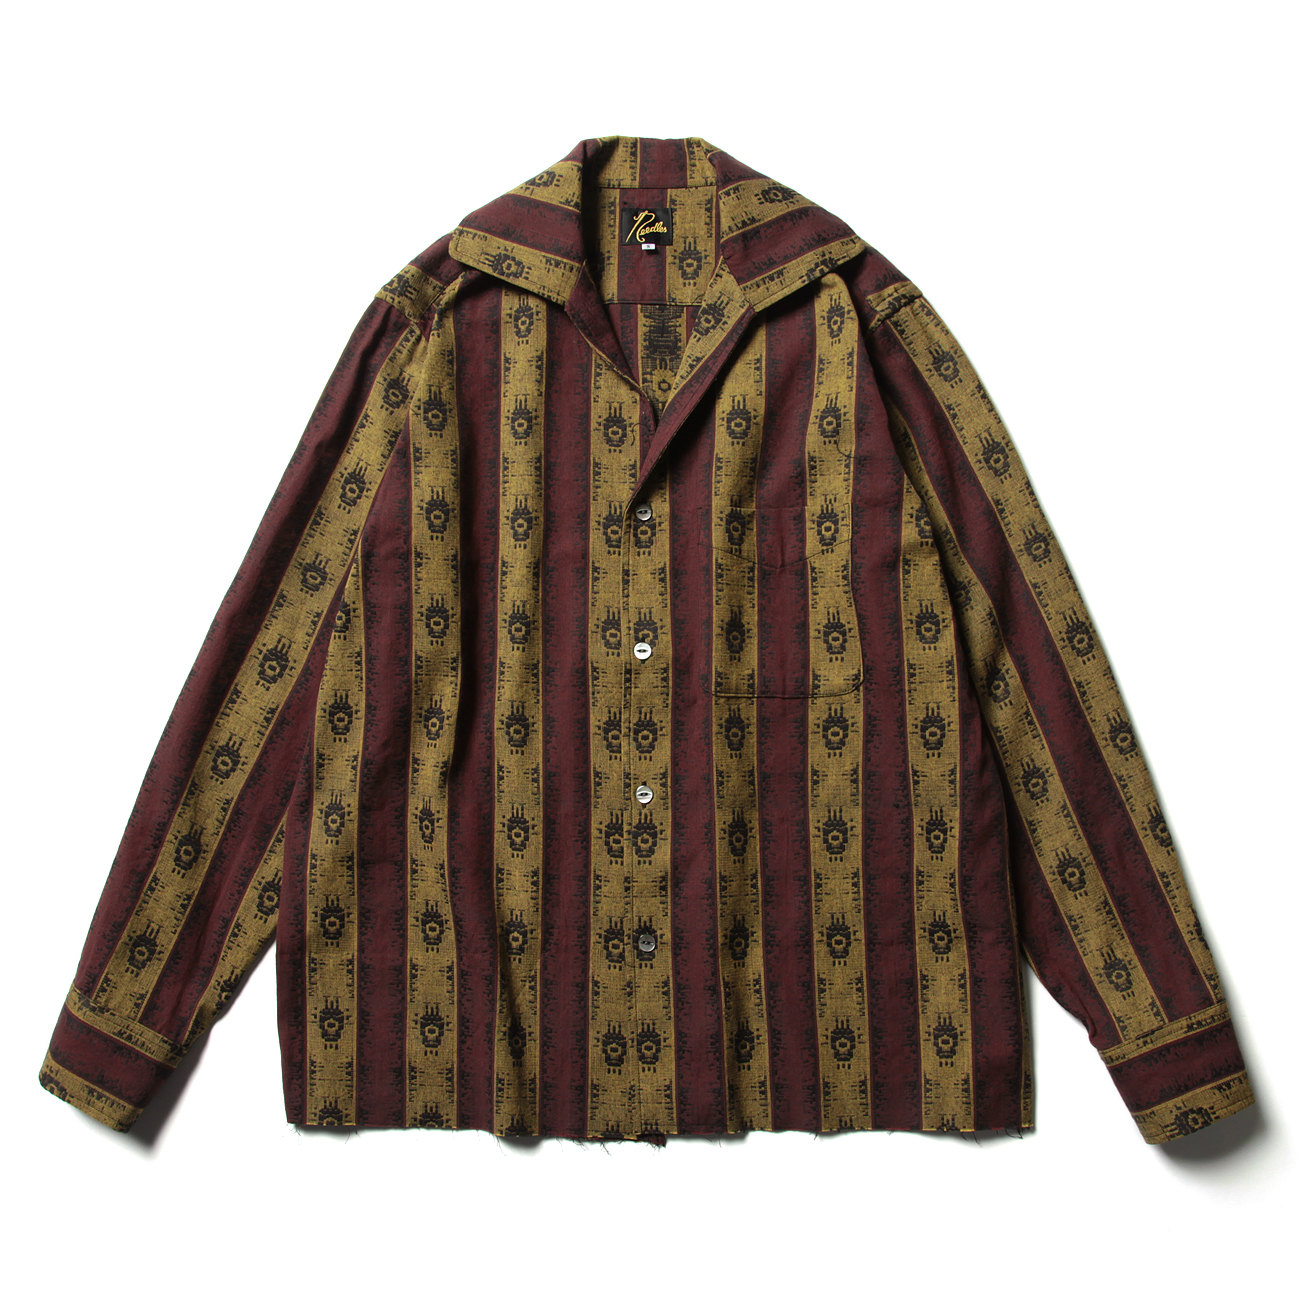 C.O.B. Italian Collar Shirt - India Stripe Jq. - Bordeaux